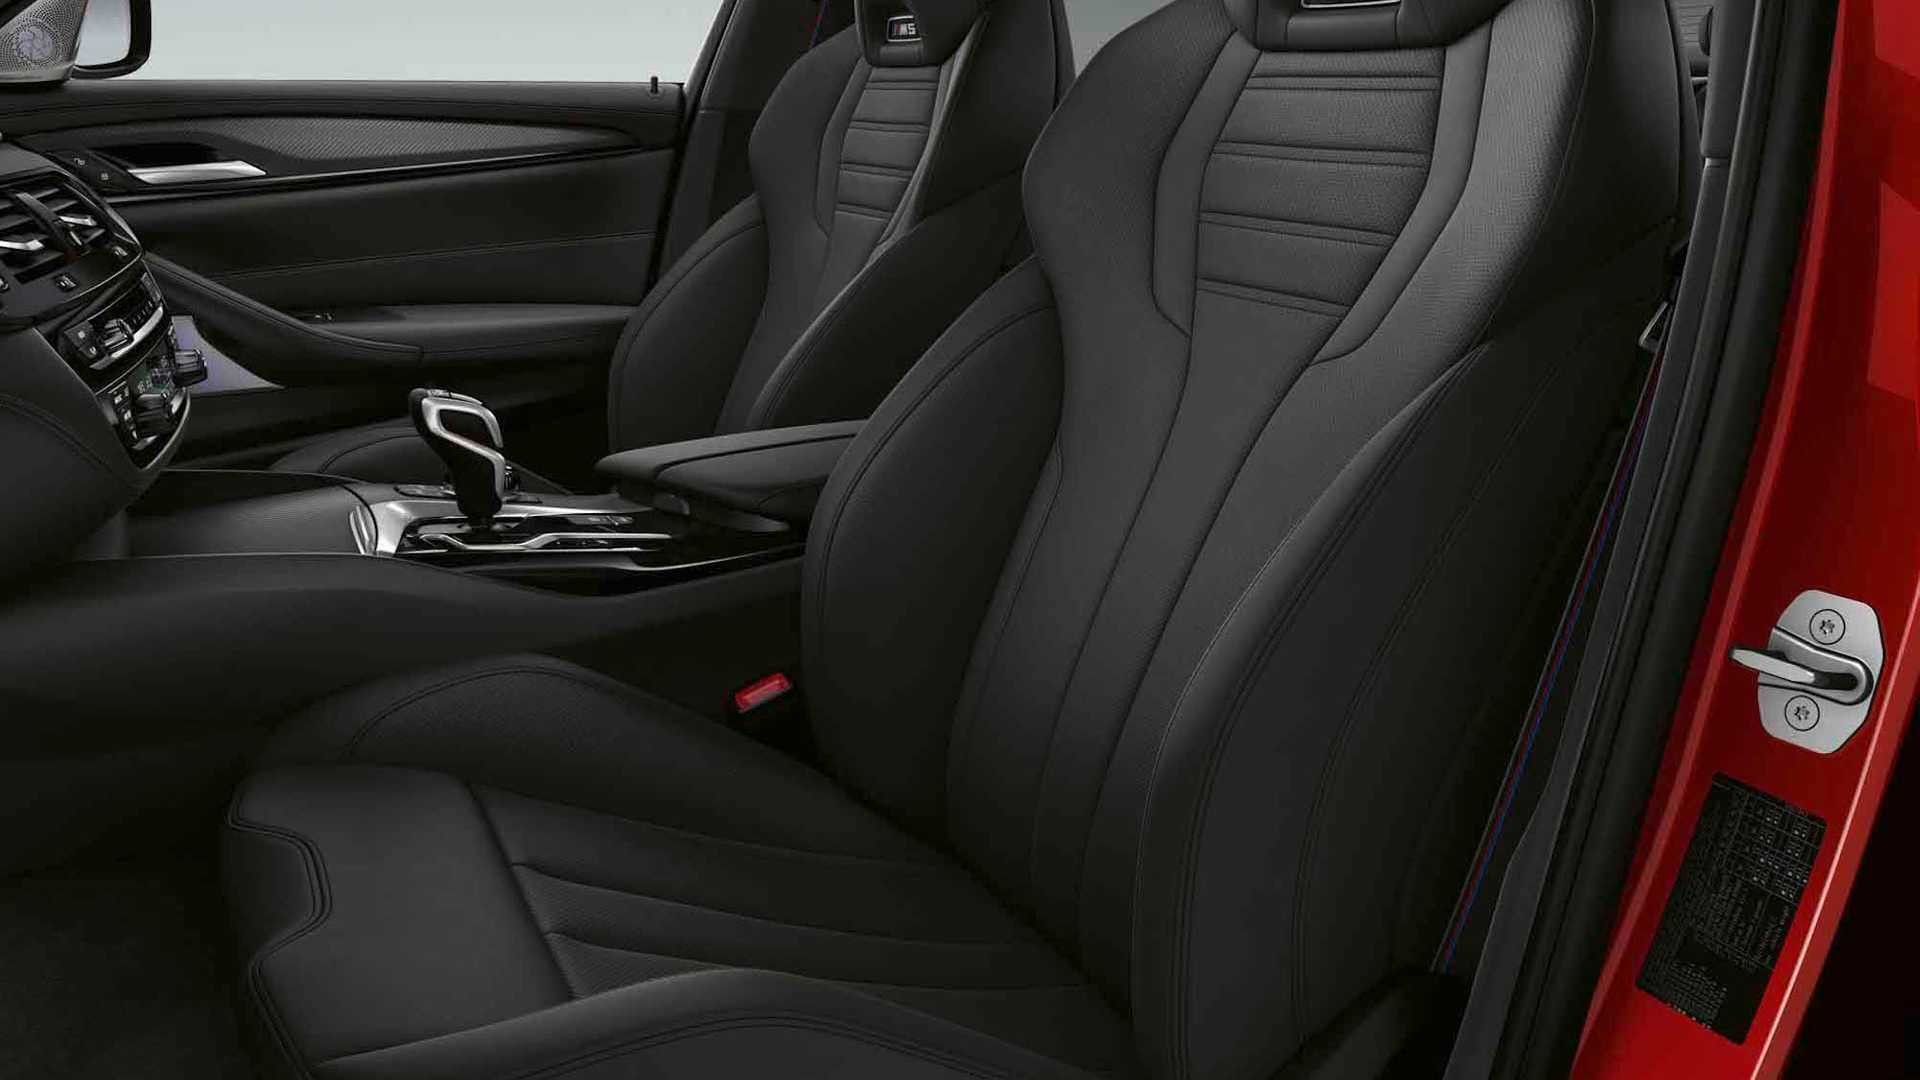 2020 BMW M5 yeni yüzü ve teknolojileriyle tanıtıldı